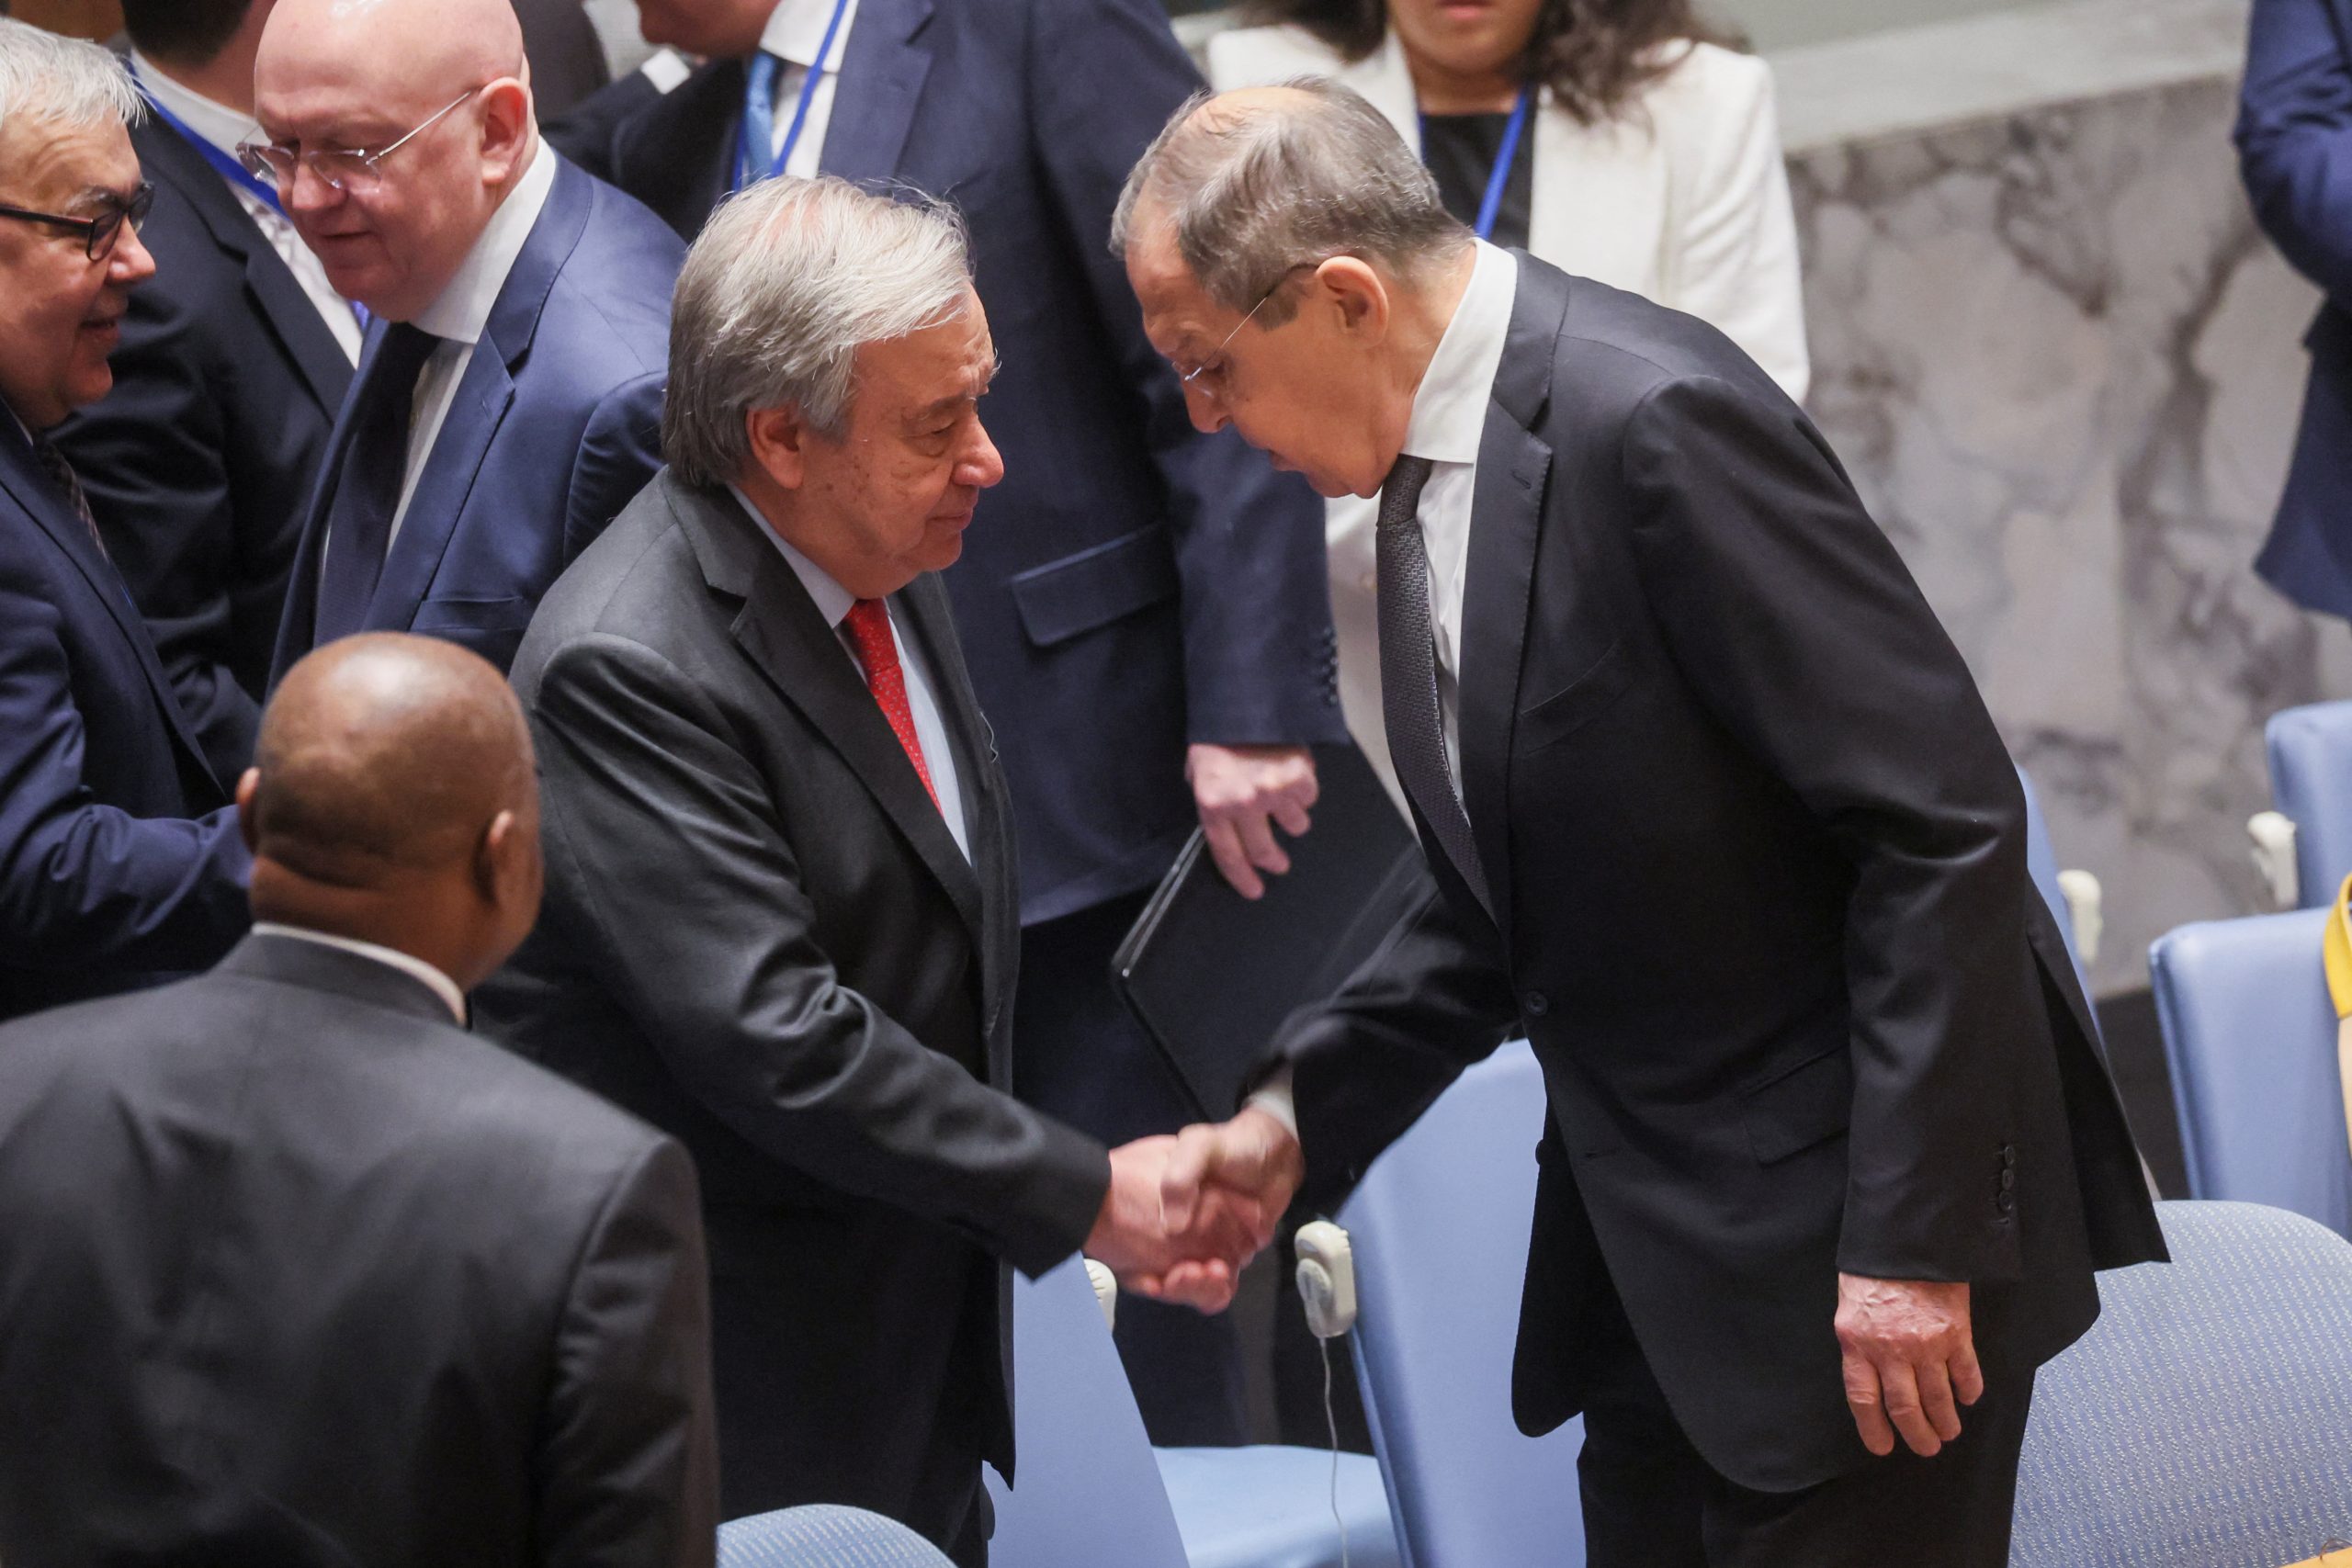 Ο Ρώσος ΥΠΕΞ Σ.Λαβρόφ γίνεται δεκτός σαν ήρωας στην συνέλευση του Συμβουλίου Ασφαλείας του ΟΗΕ! – Όλοι ήθελαν να του σφίξουν το χέρι!